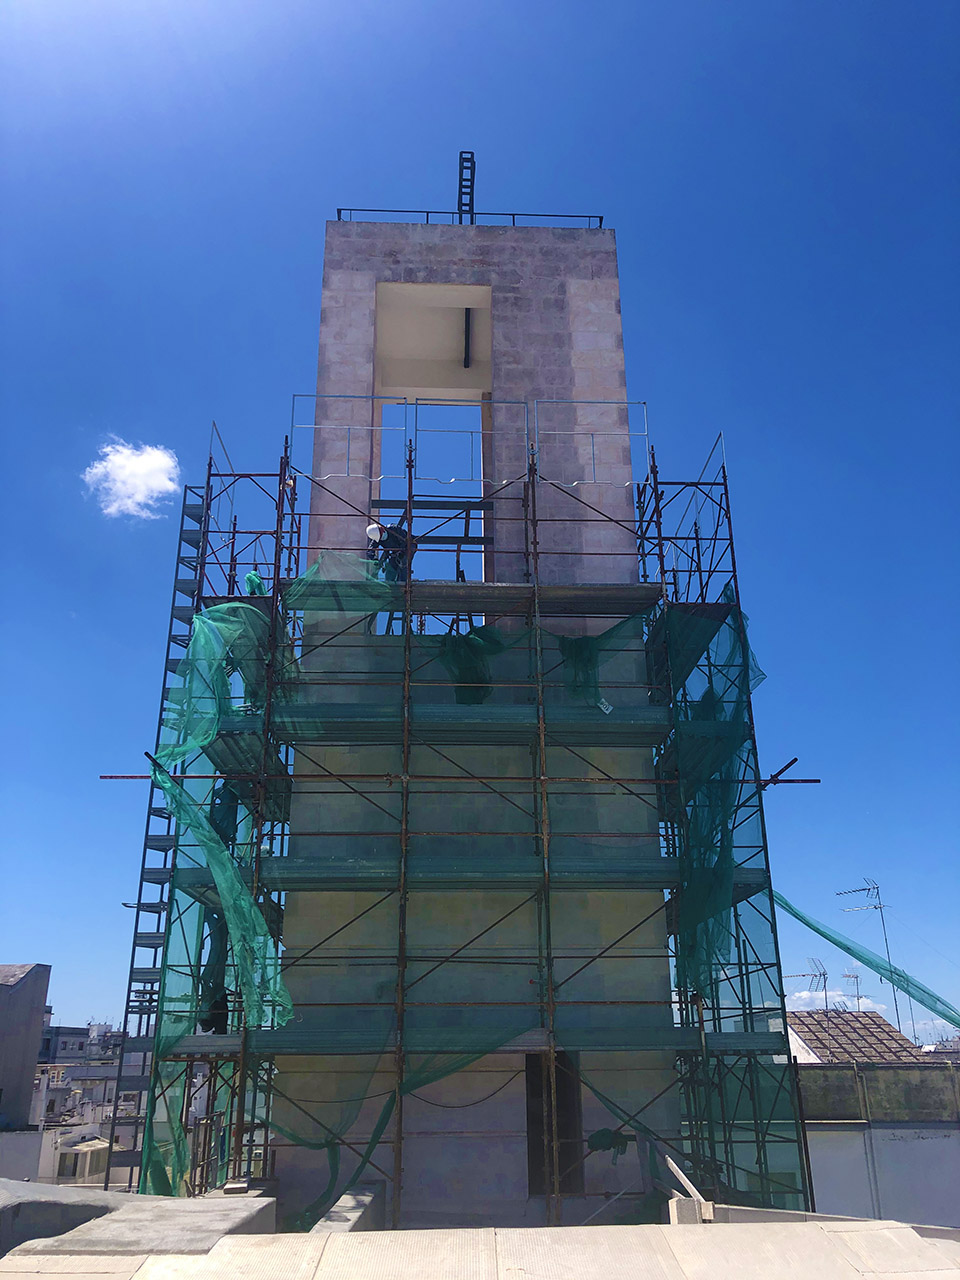 costruzioni restauri sirio ostuni campanile chiesa santuario santi medici cosma damiano ostuni img 0855 1